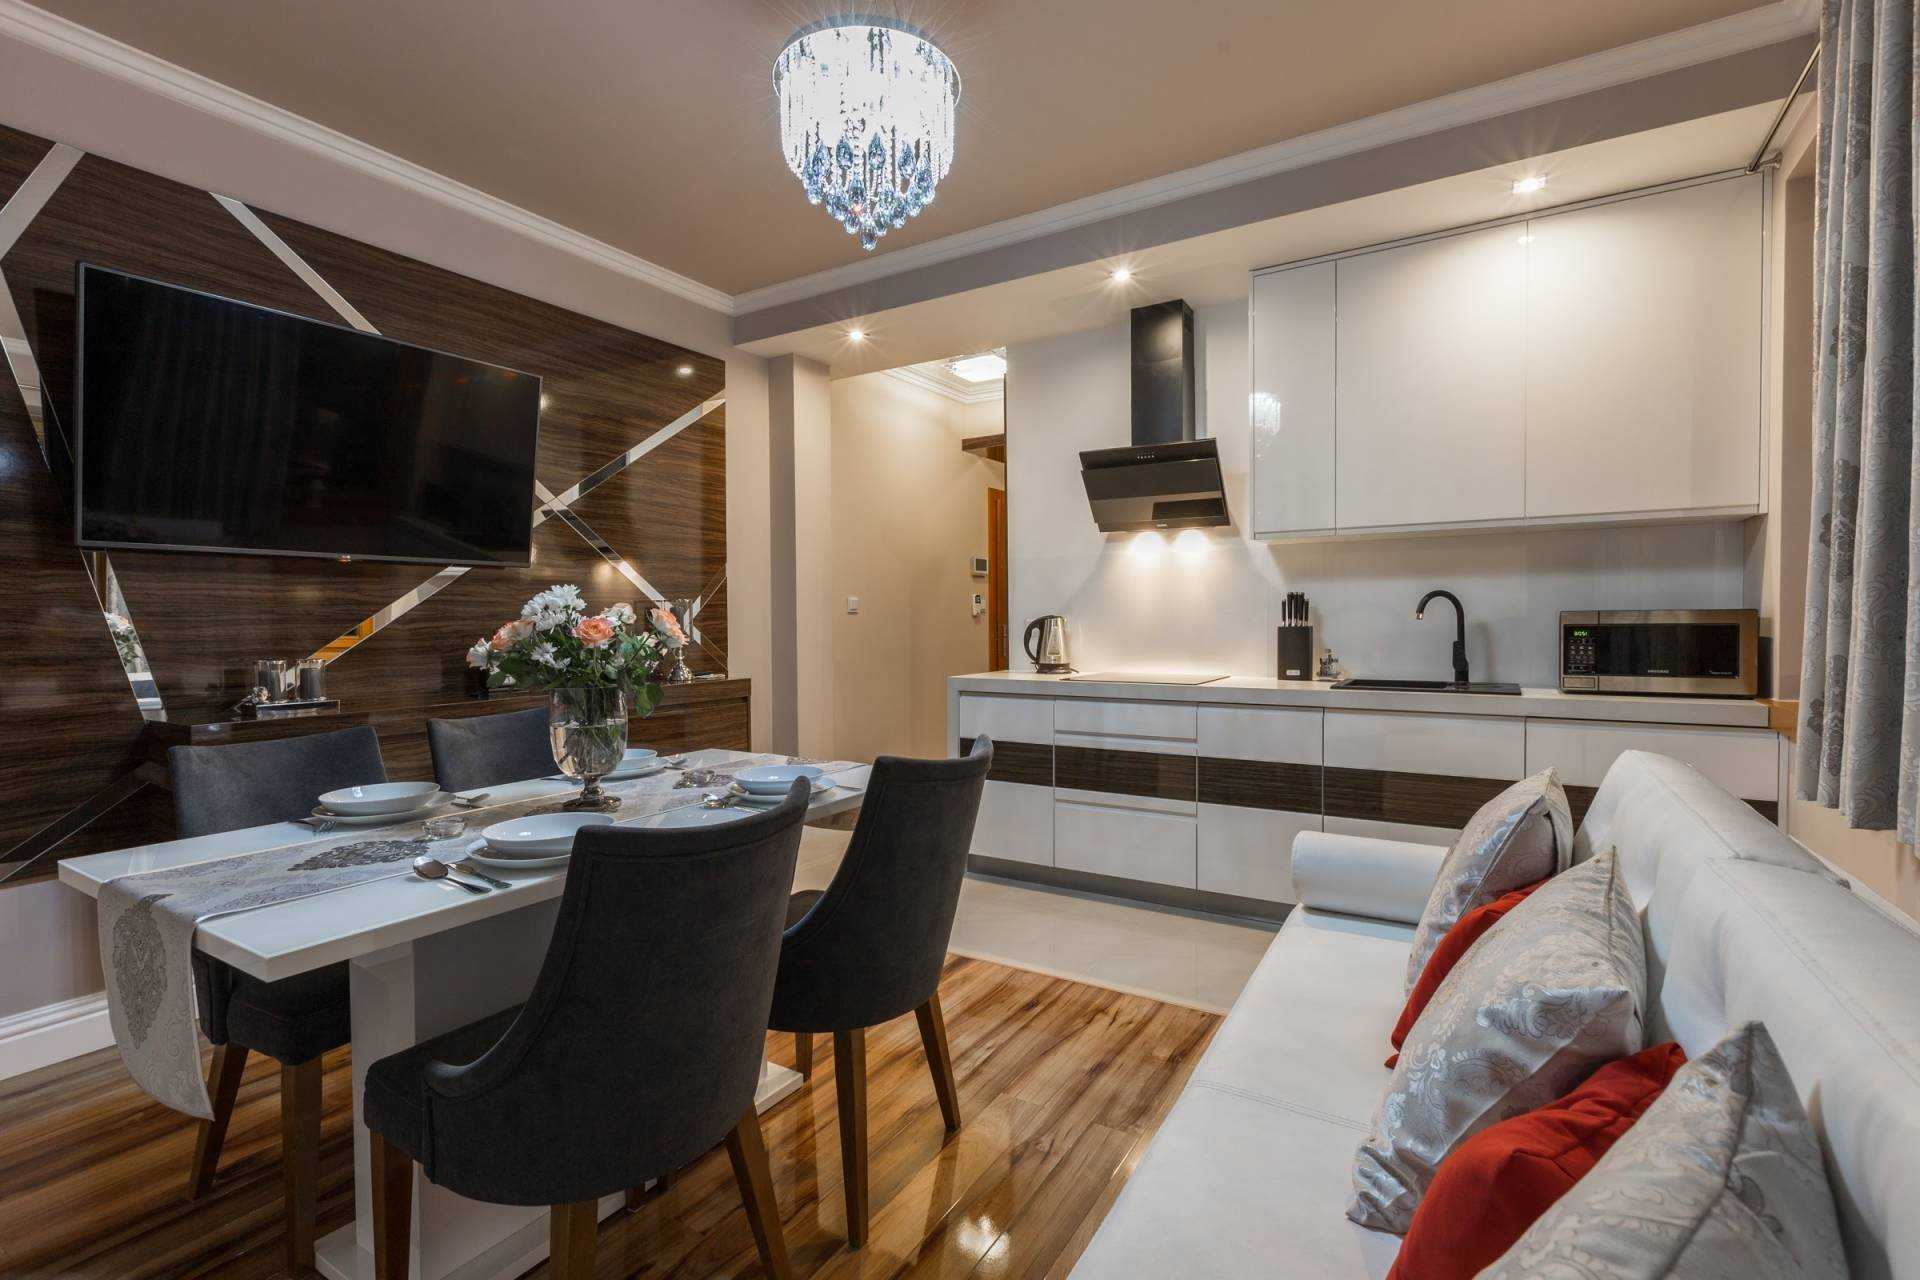 Дизайн кухни гостиной в современном стиле в квартире 15 кв м с диваном фото